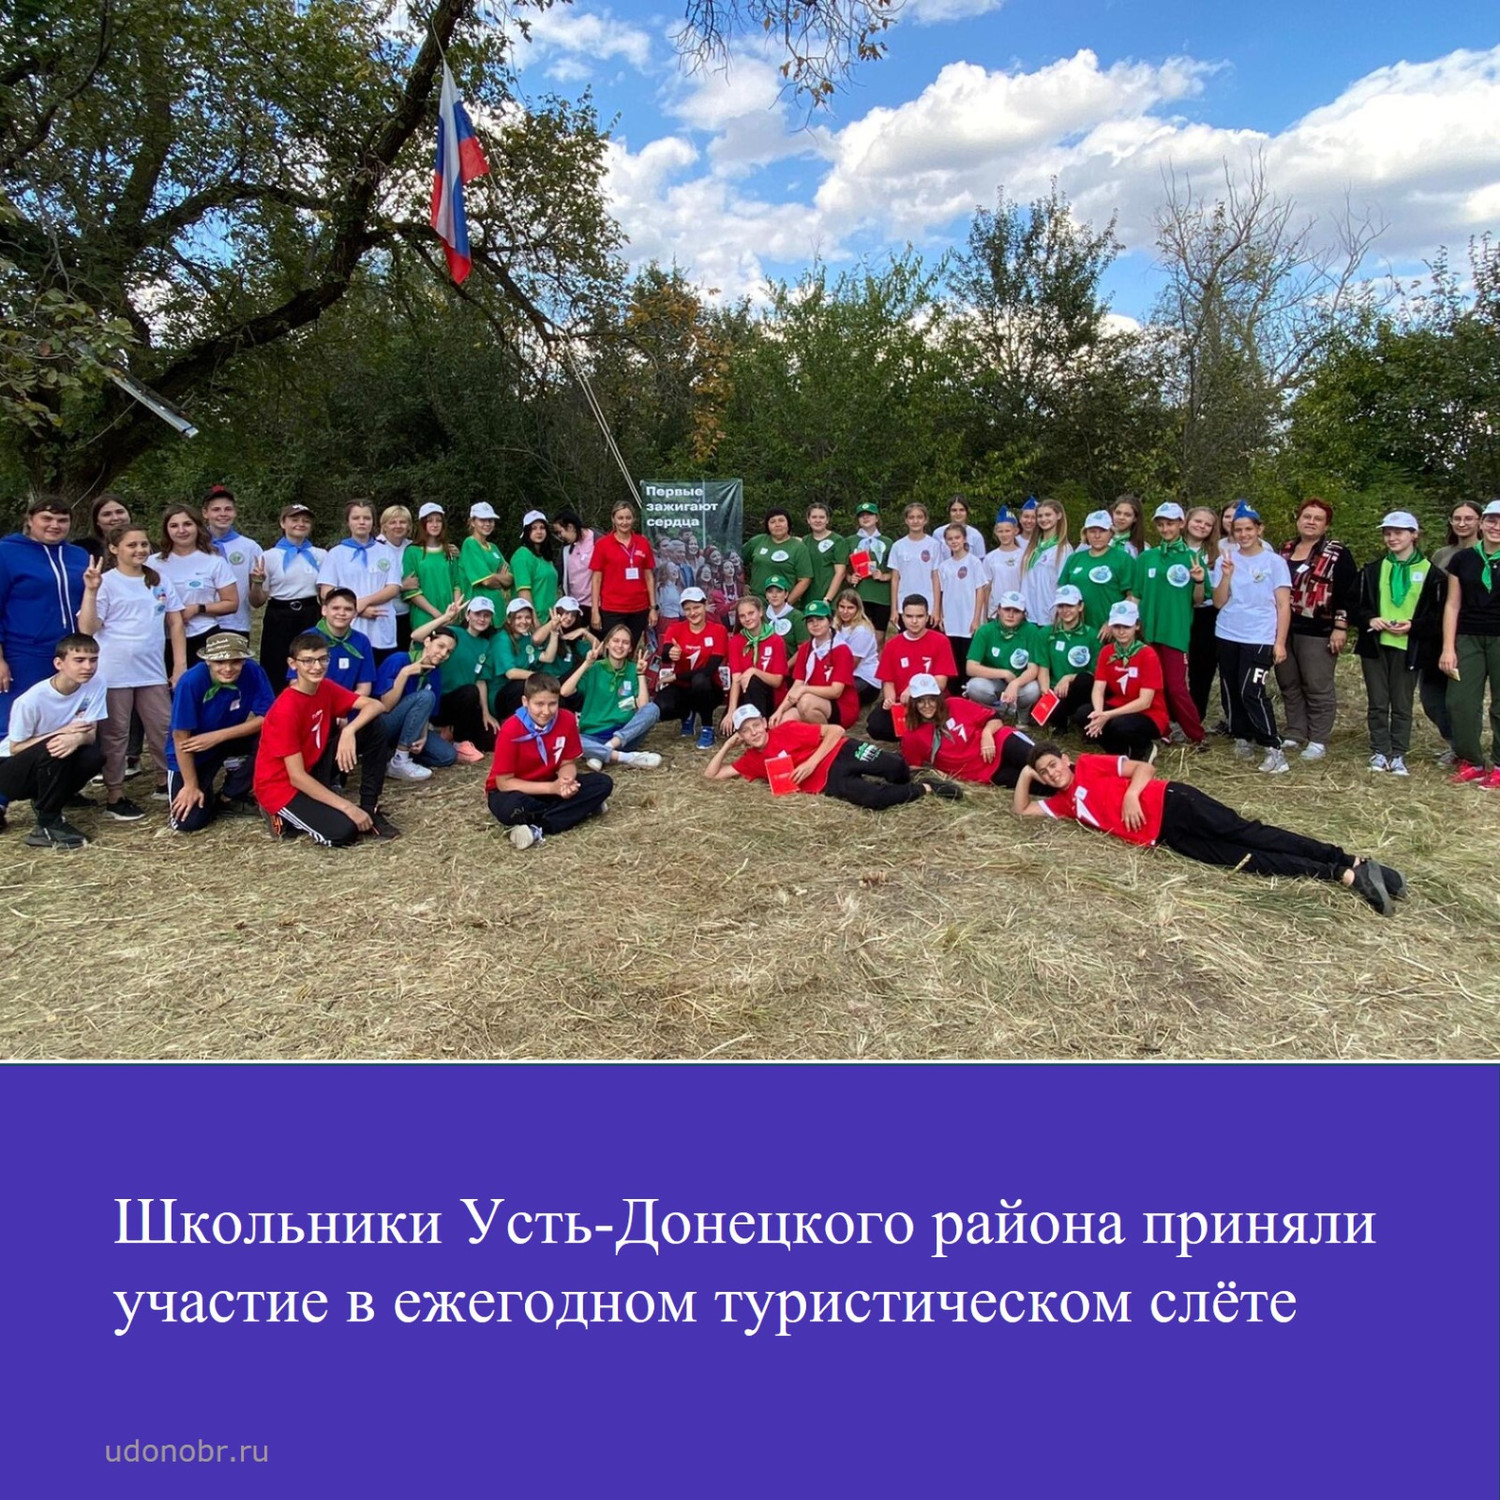 Школьники Усть-Донецкого района приняли участие в ежегодном туристическом слёте